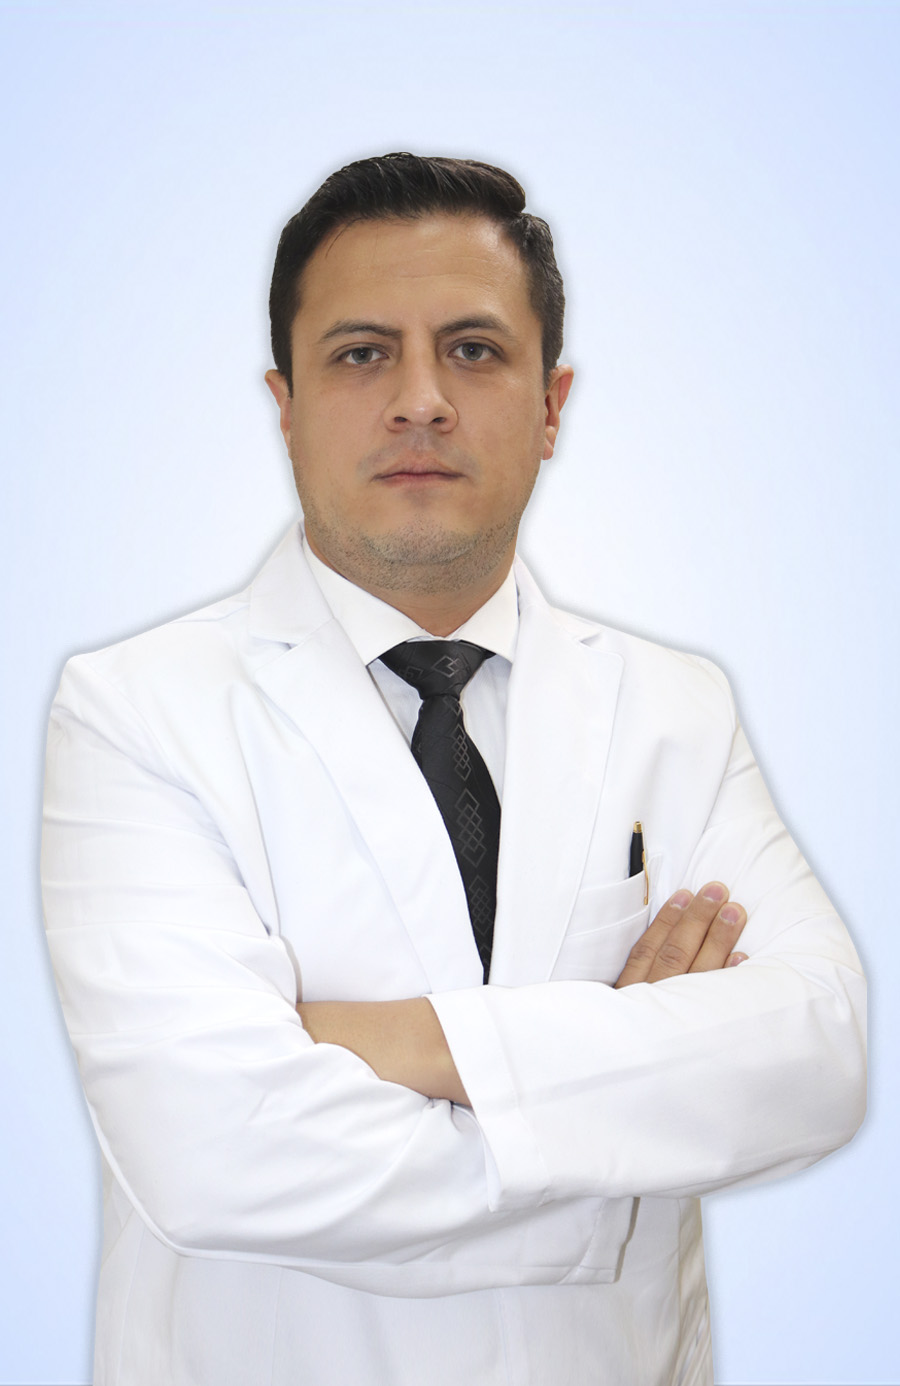 DR. SOTELO